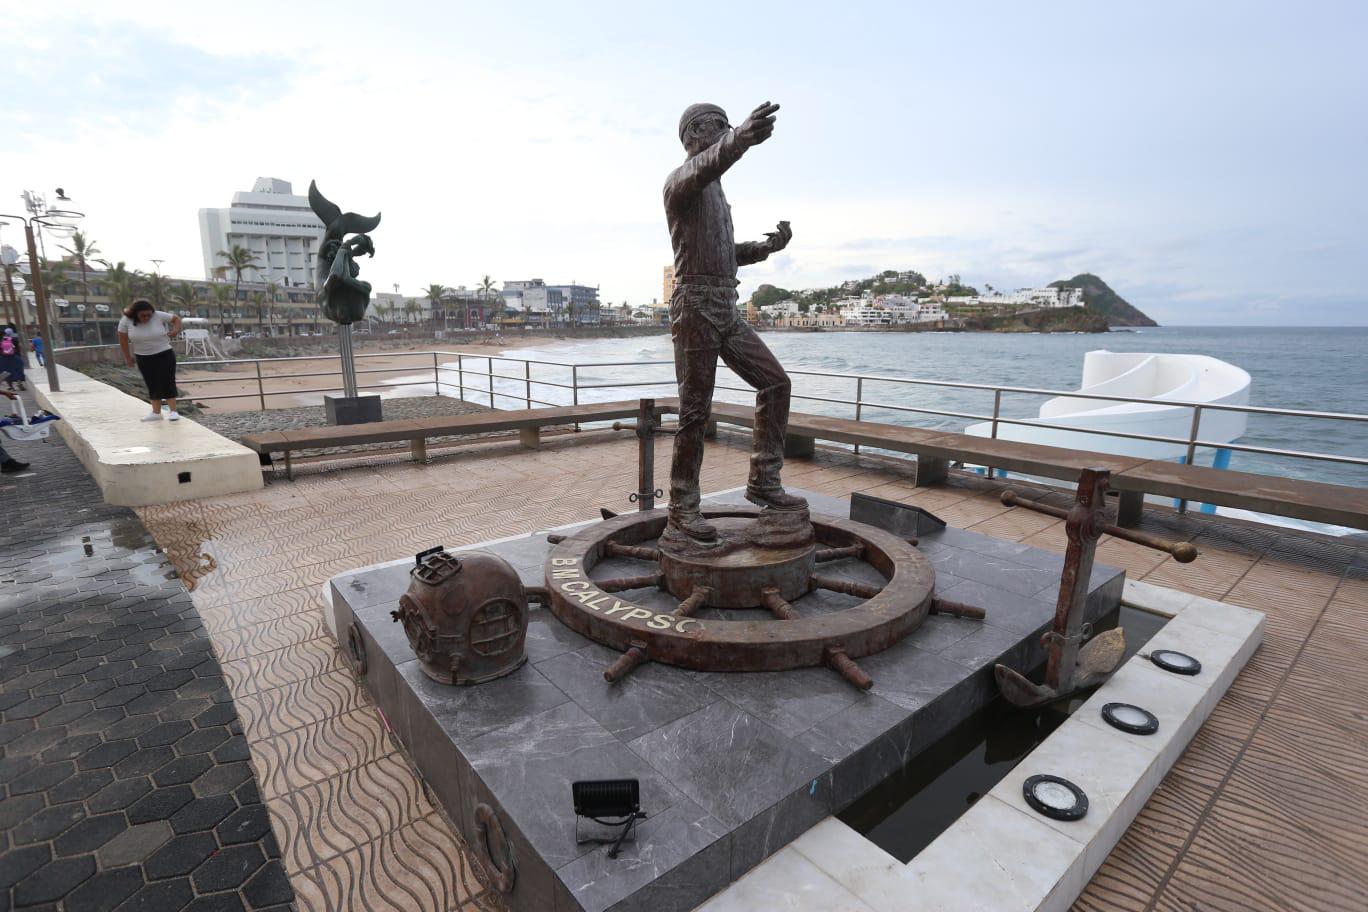 $!Monumento de Jacques Cousteau ya estaba en el Parque Central de Mazatlán, pero reubicarlo costó $1.6 millones